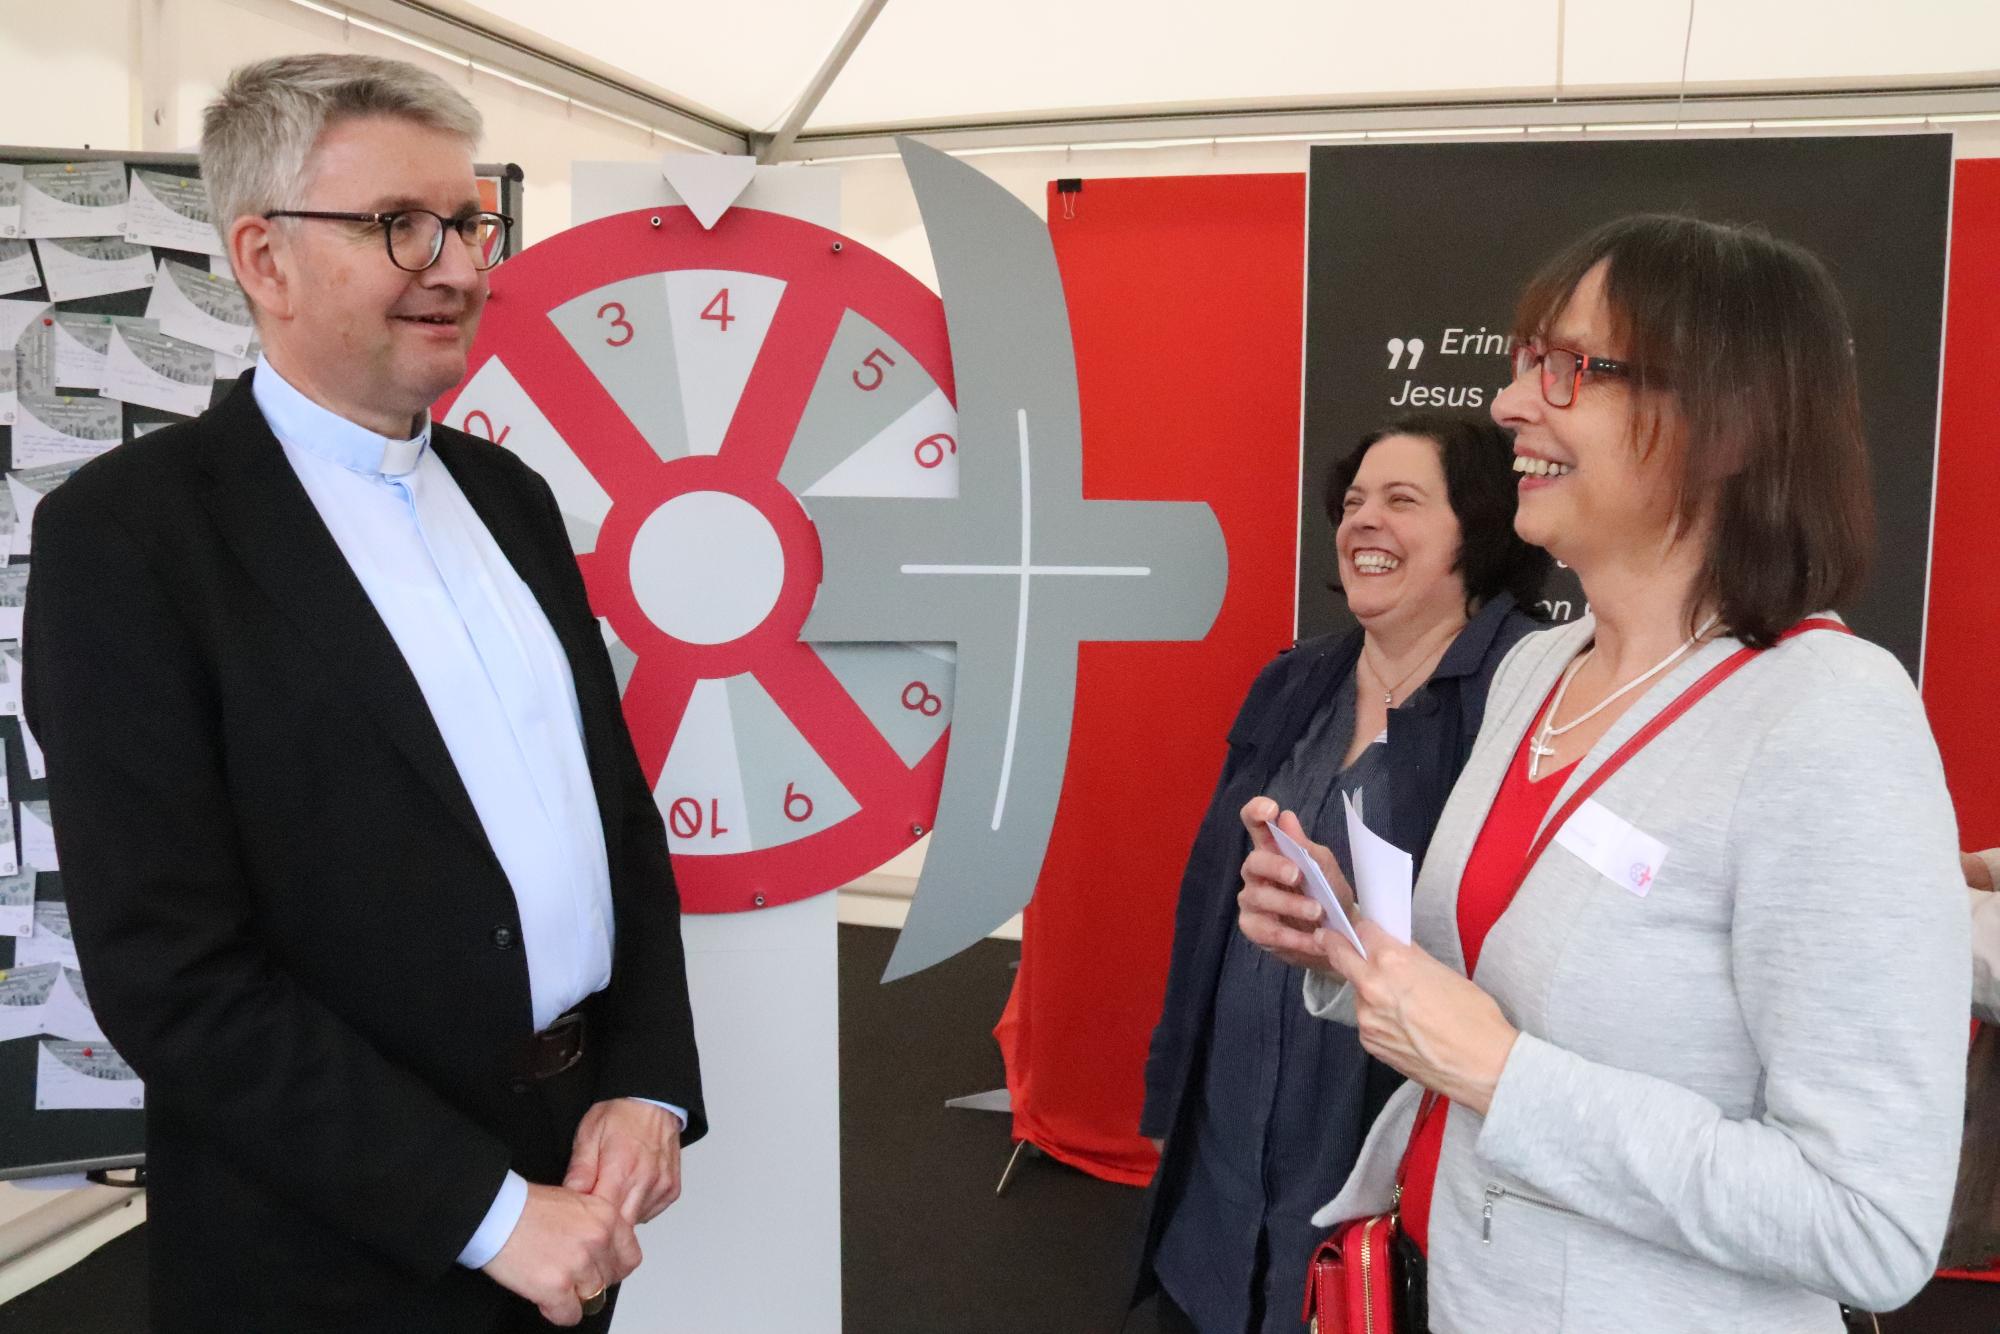 Bischof Kohlgraf und Stephanie Rieth besuchten den Stand des Bistums Mainz unter der Leitung von Susanne Metzger (rechts), Abteilungsleitung Öffentlichkeitsarbeit